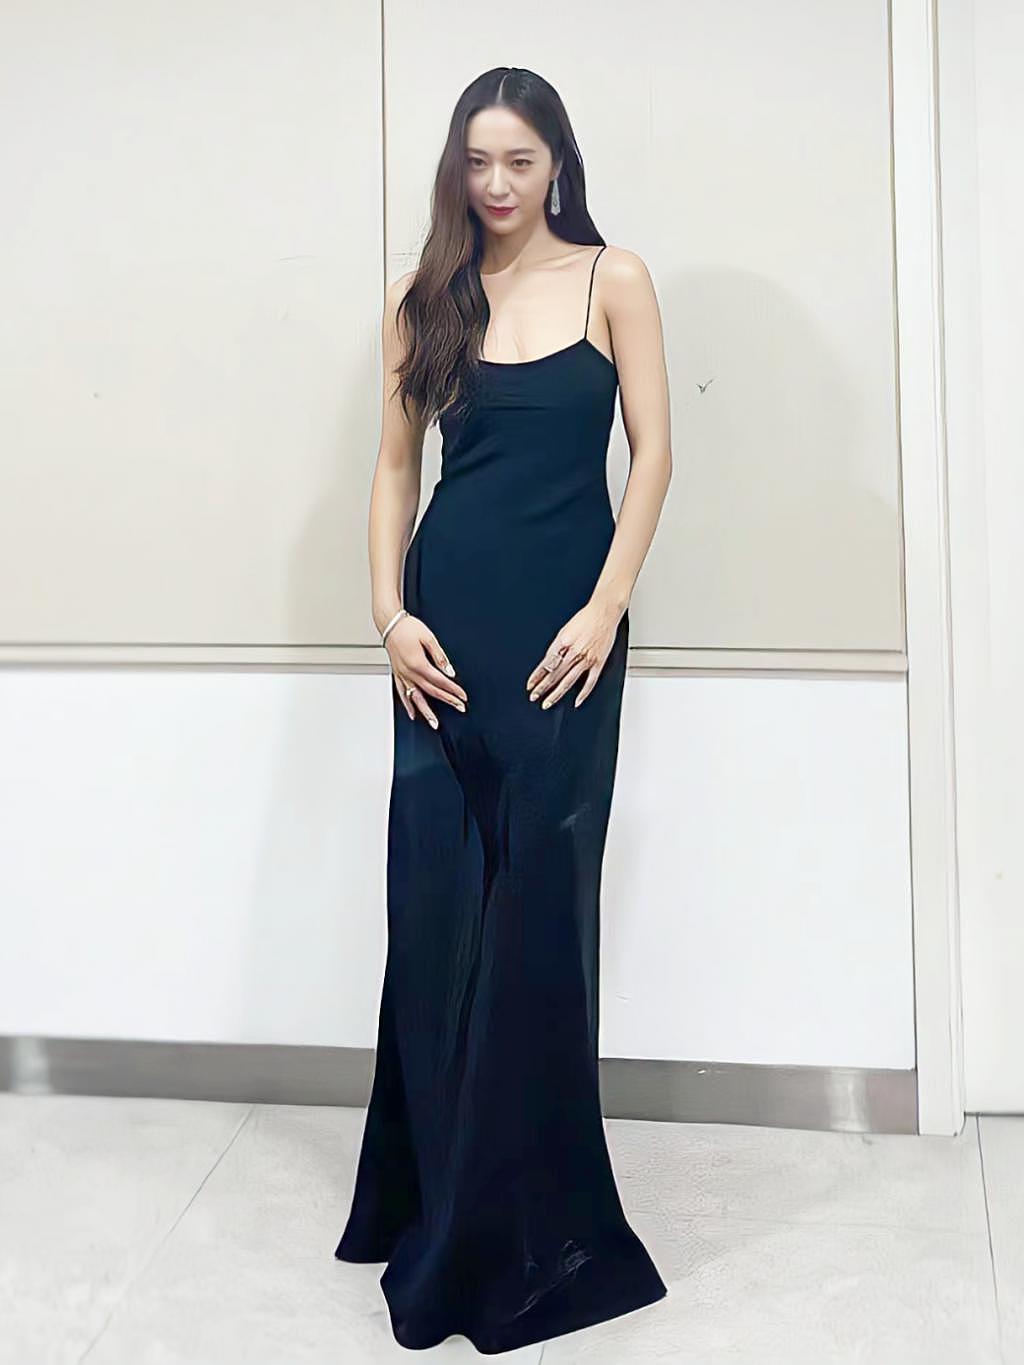 韩国女明星是对漂亮的礼服过敏吗？ - 90